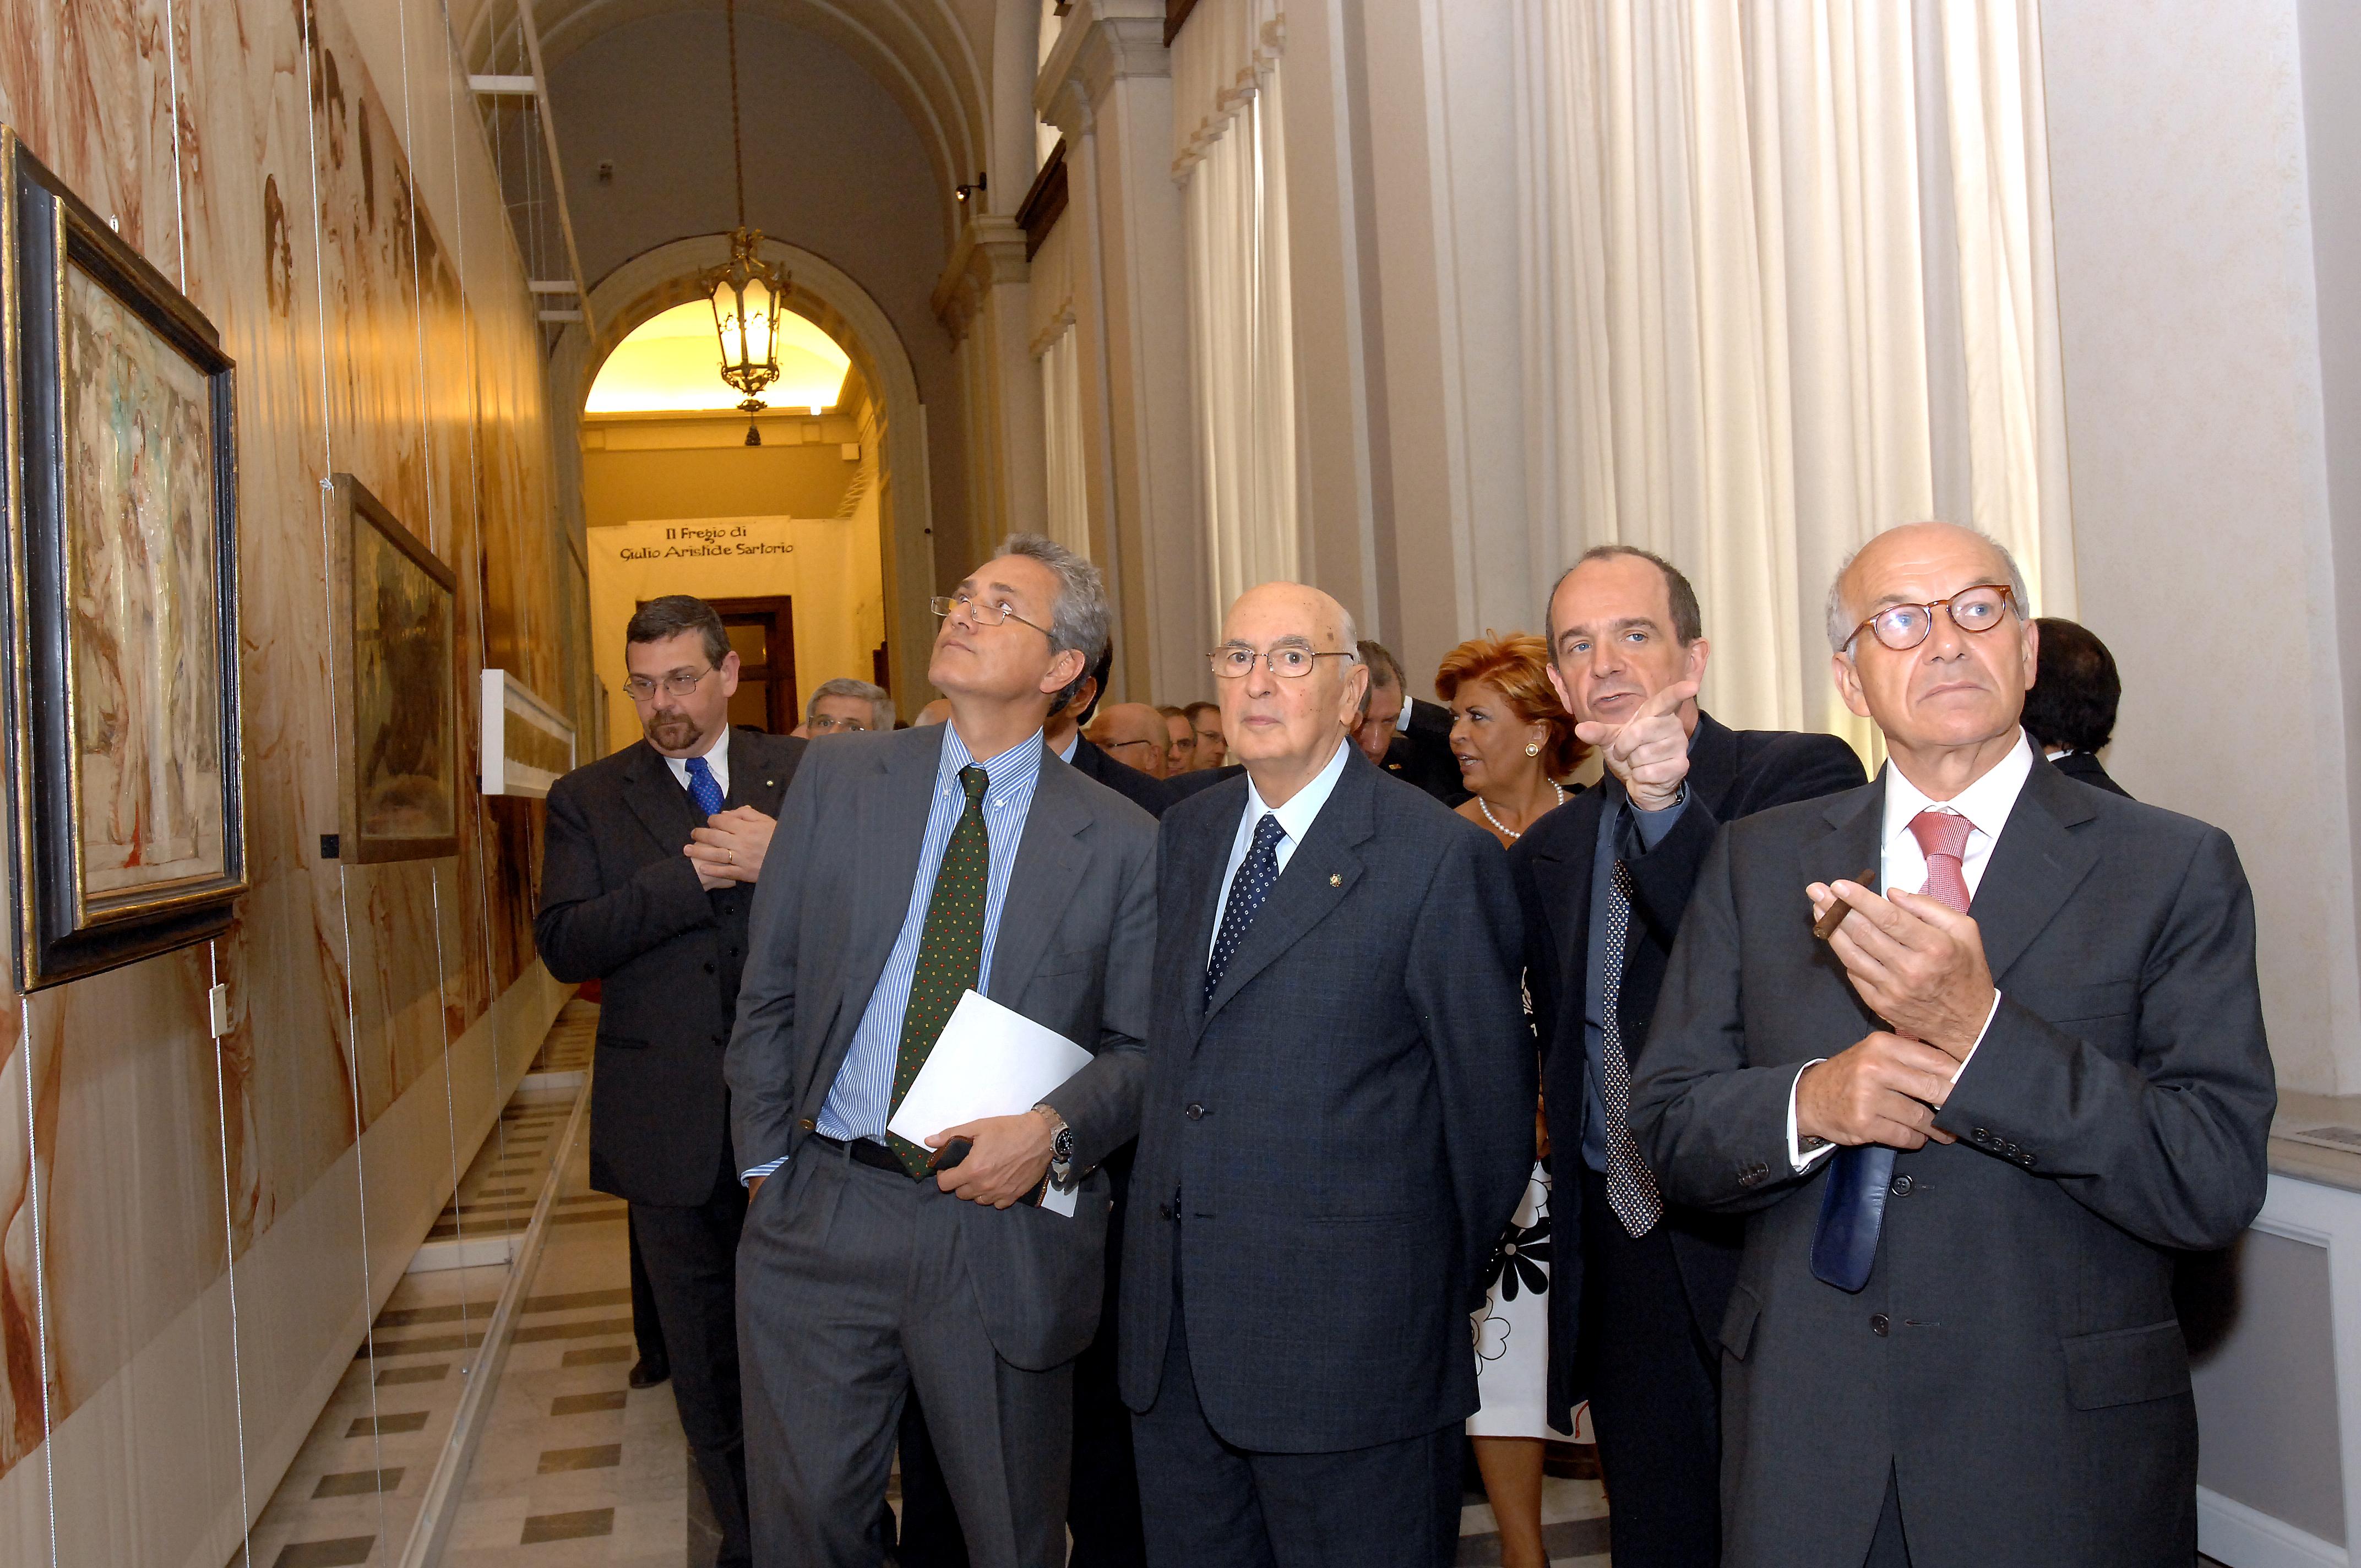 Inaugurazione della mostra sul fregio di Giulio Aristide Sartorio, 15 maggio 2007 - Il Presidente della Camera Bertinotti con il Presidente della Repubblica Napolitano